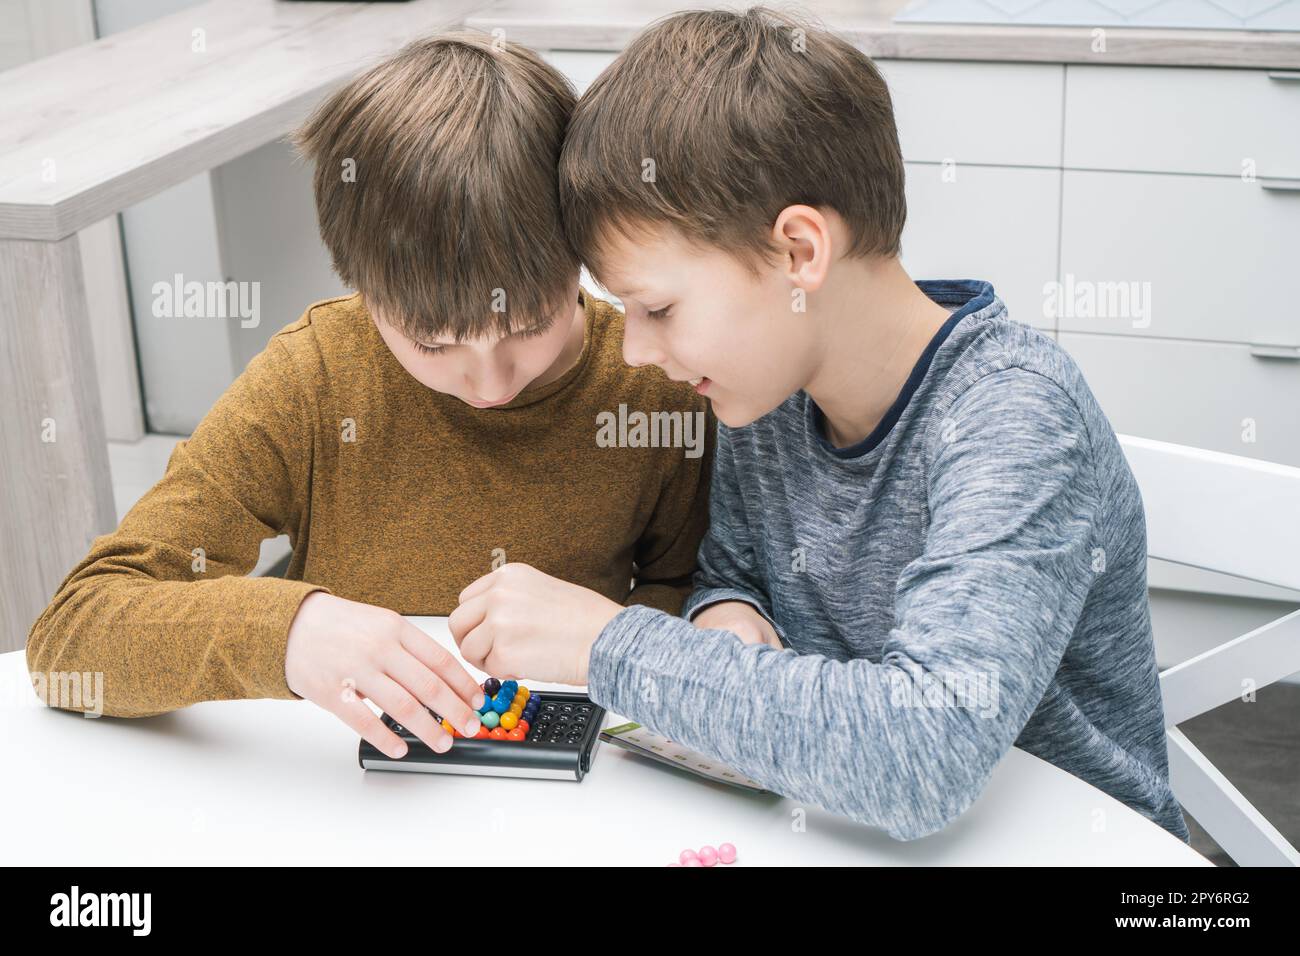 Les écoliers heureux jouent jouet constructeur assis à table. Les enfants collectent des détails colorés sur le plateau de jeu. Jeux de société. Banque D'Images